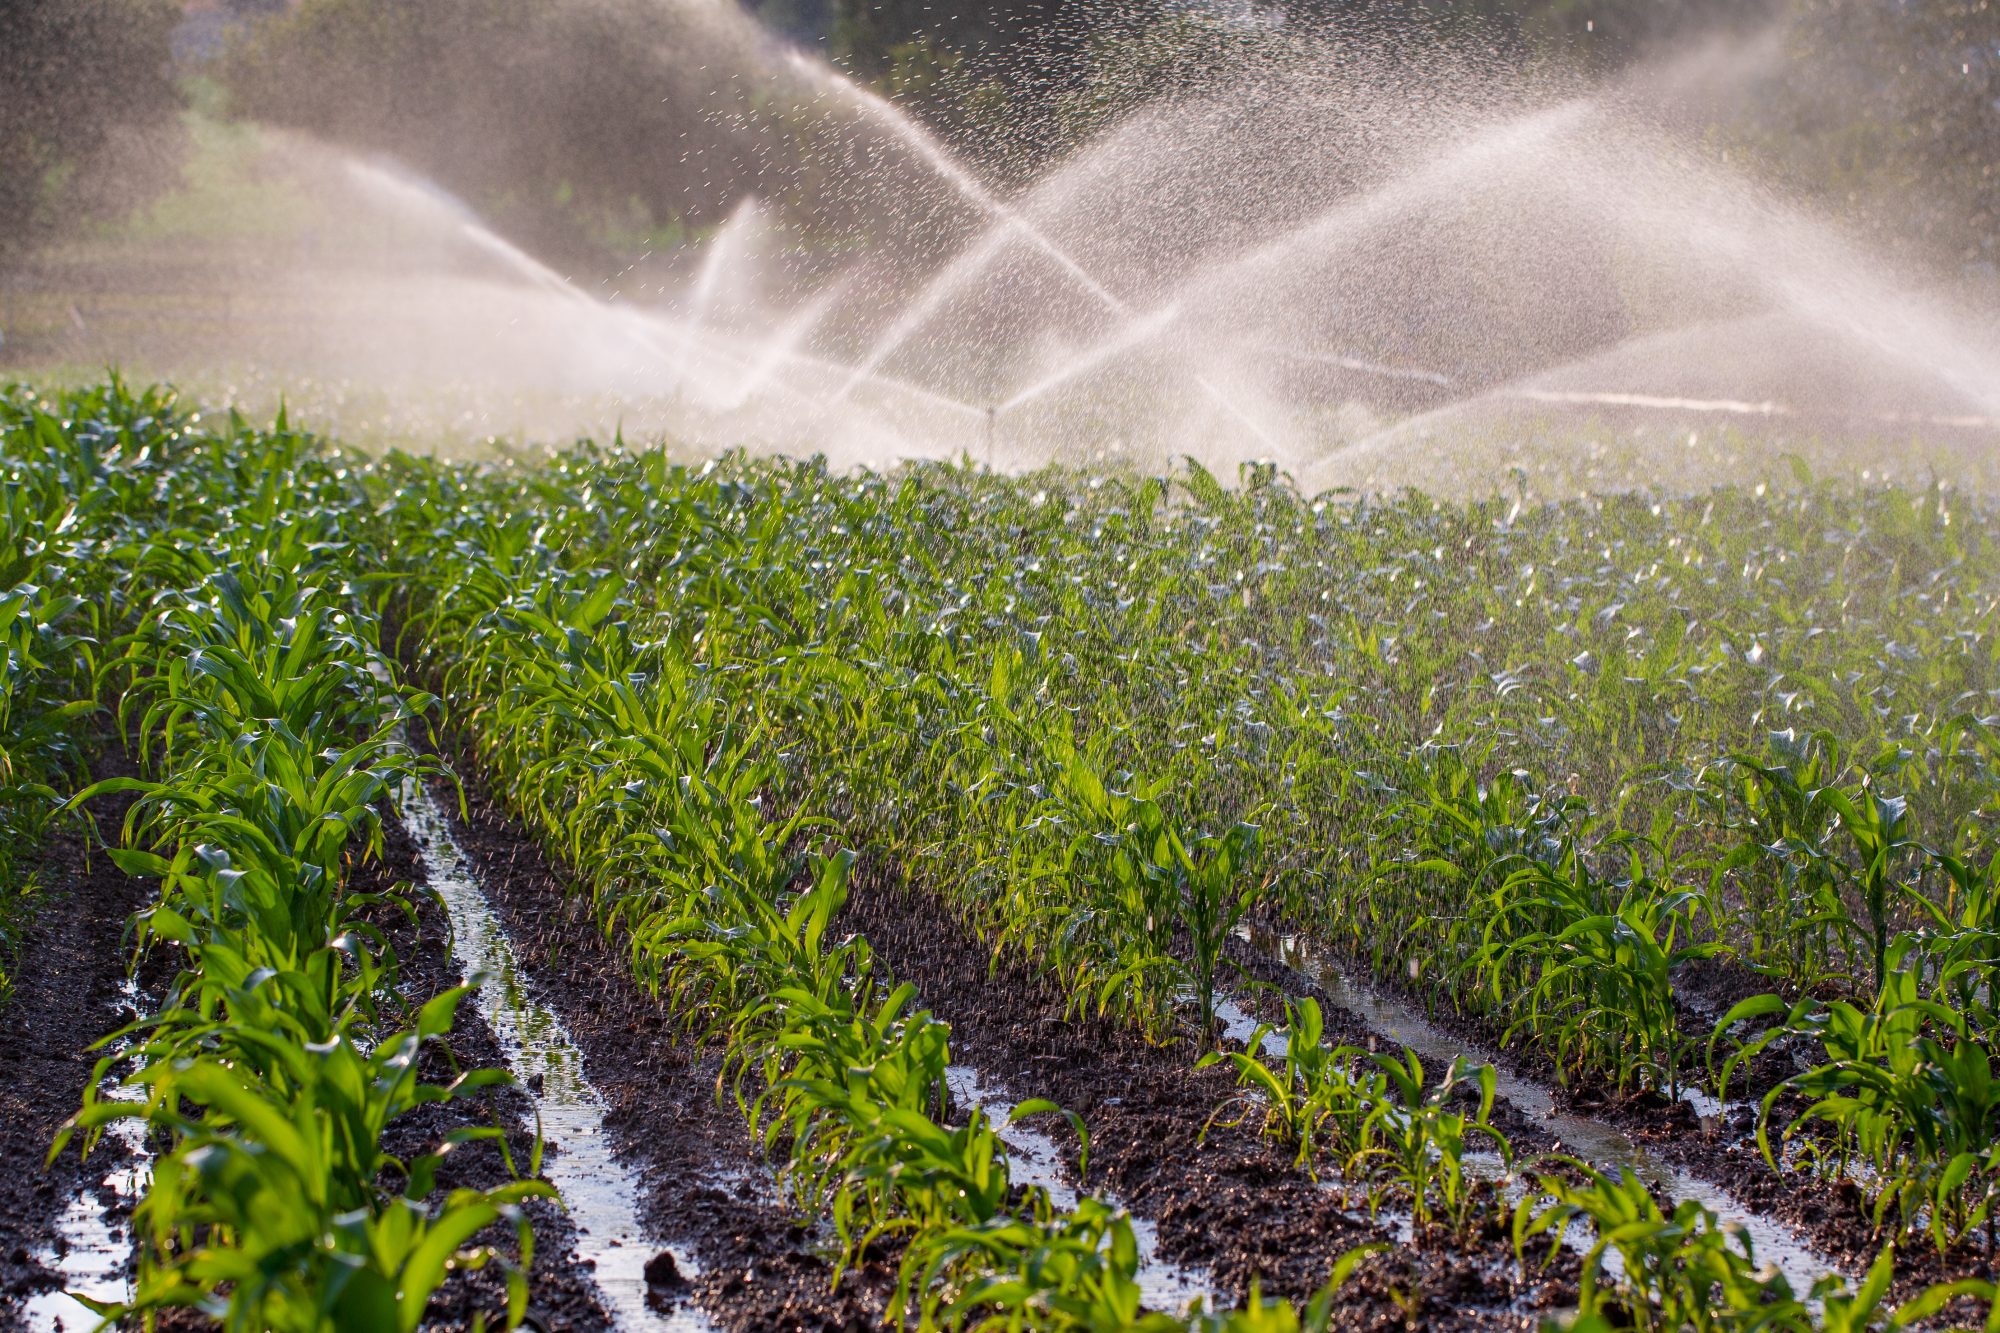 Irrigation on a crop